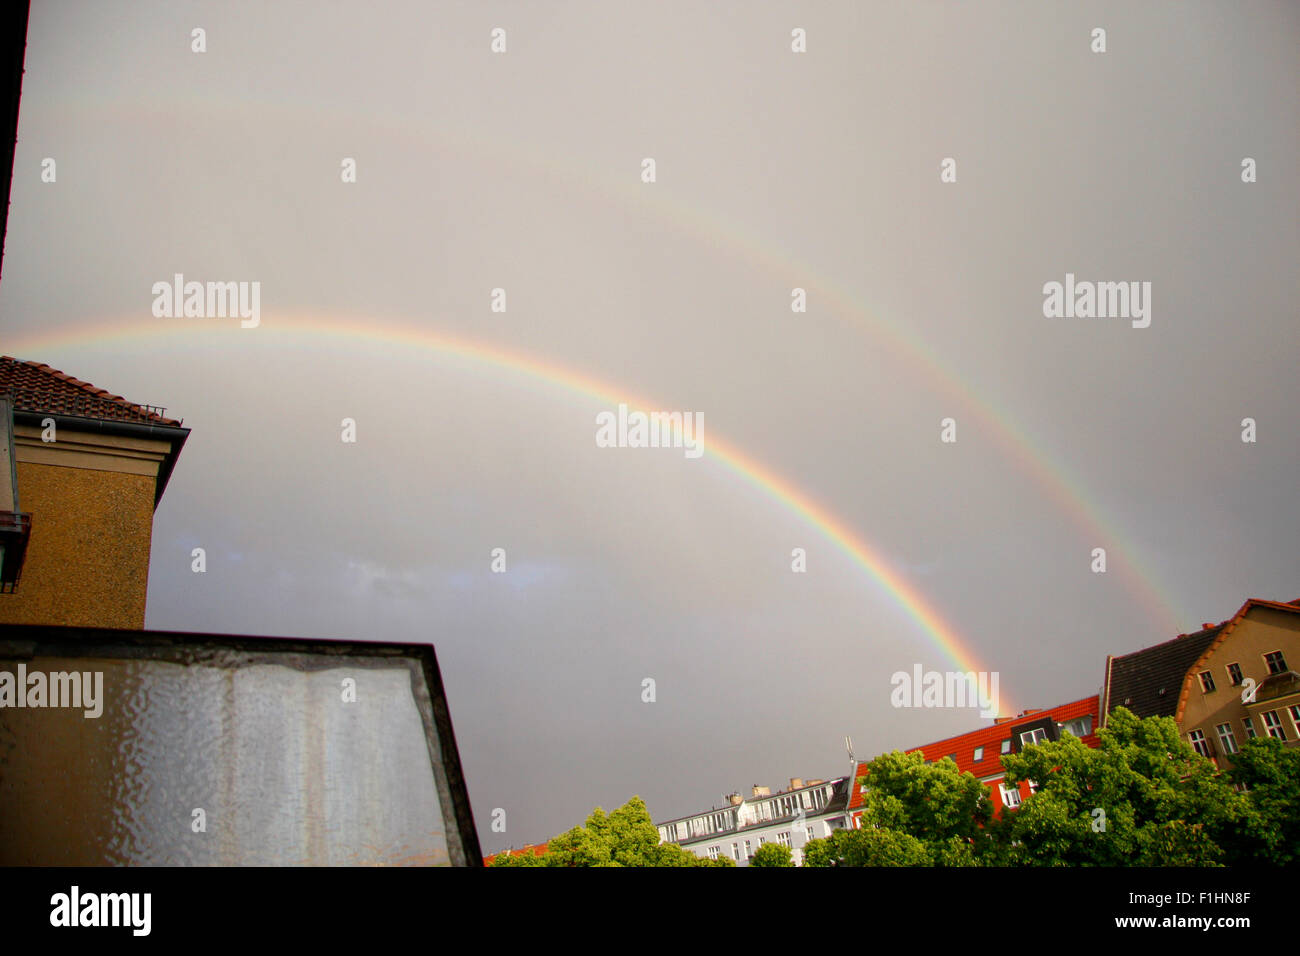 Regenbogen/ rainbow. Stock Photo